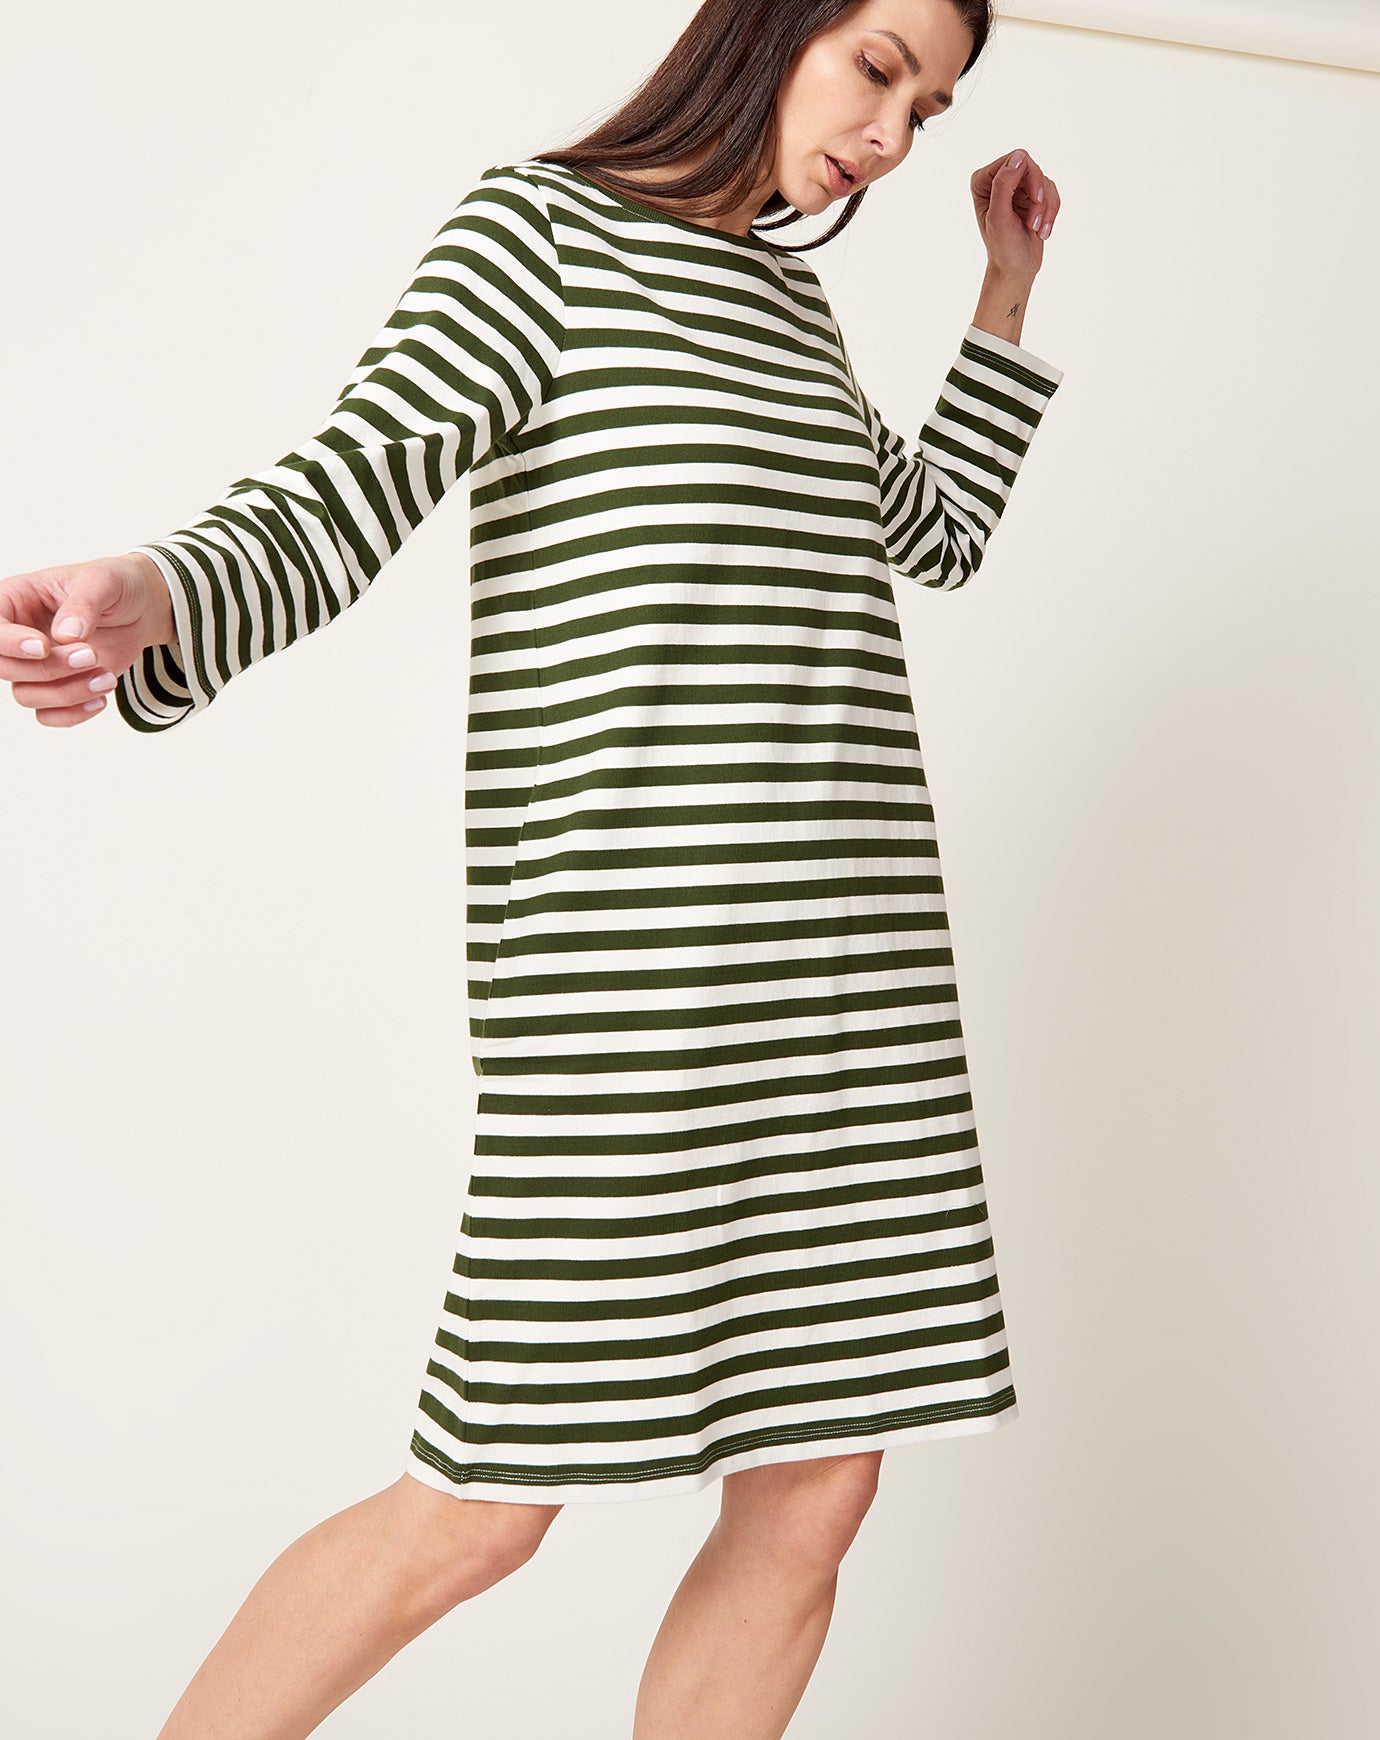 Kowtow Breton Dress in Deep Green Stripe